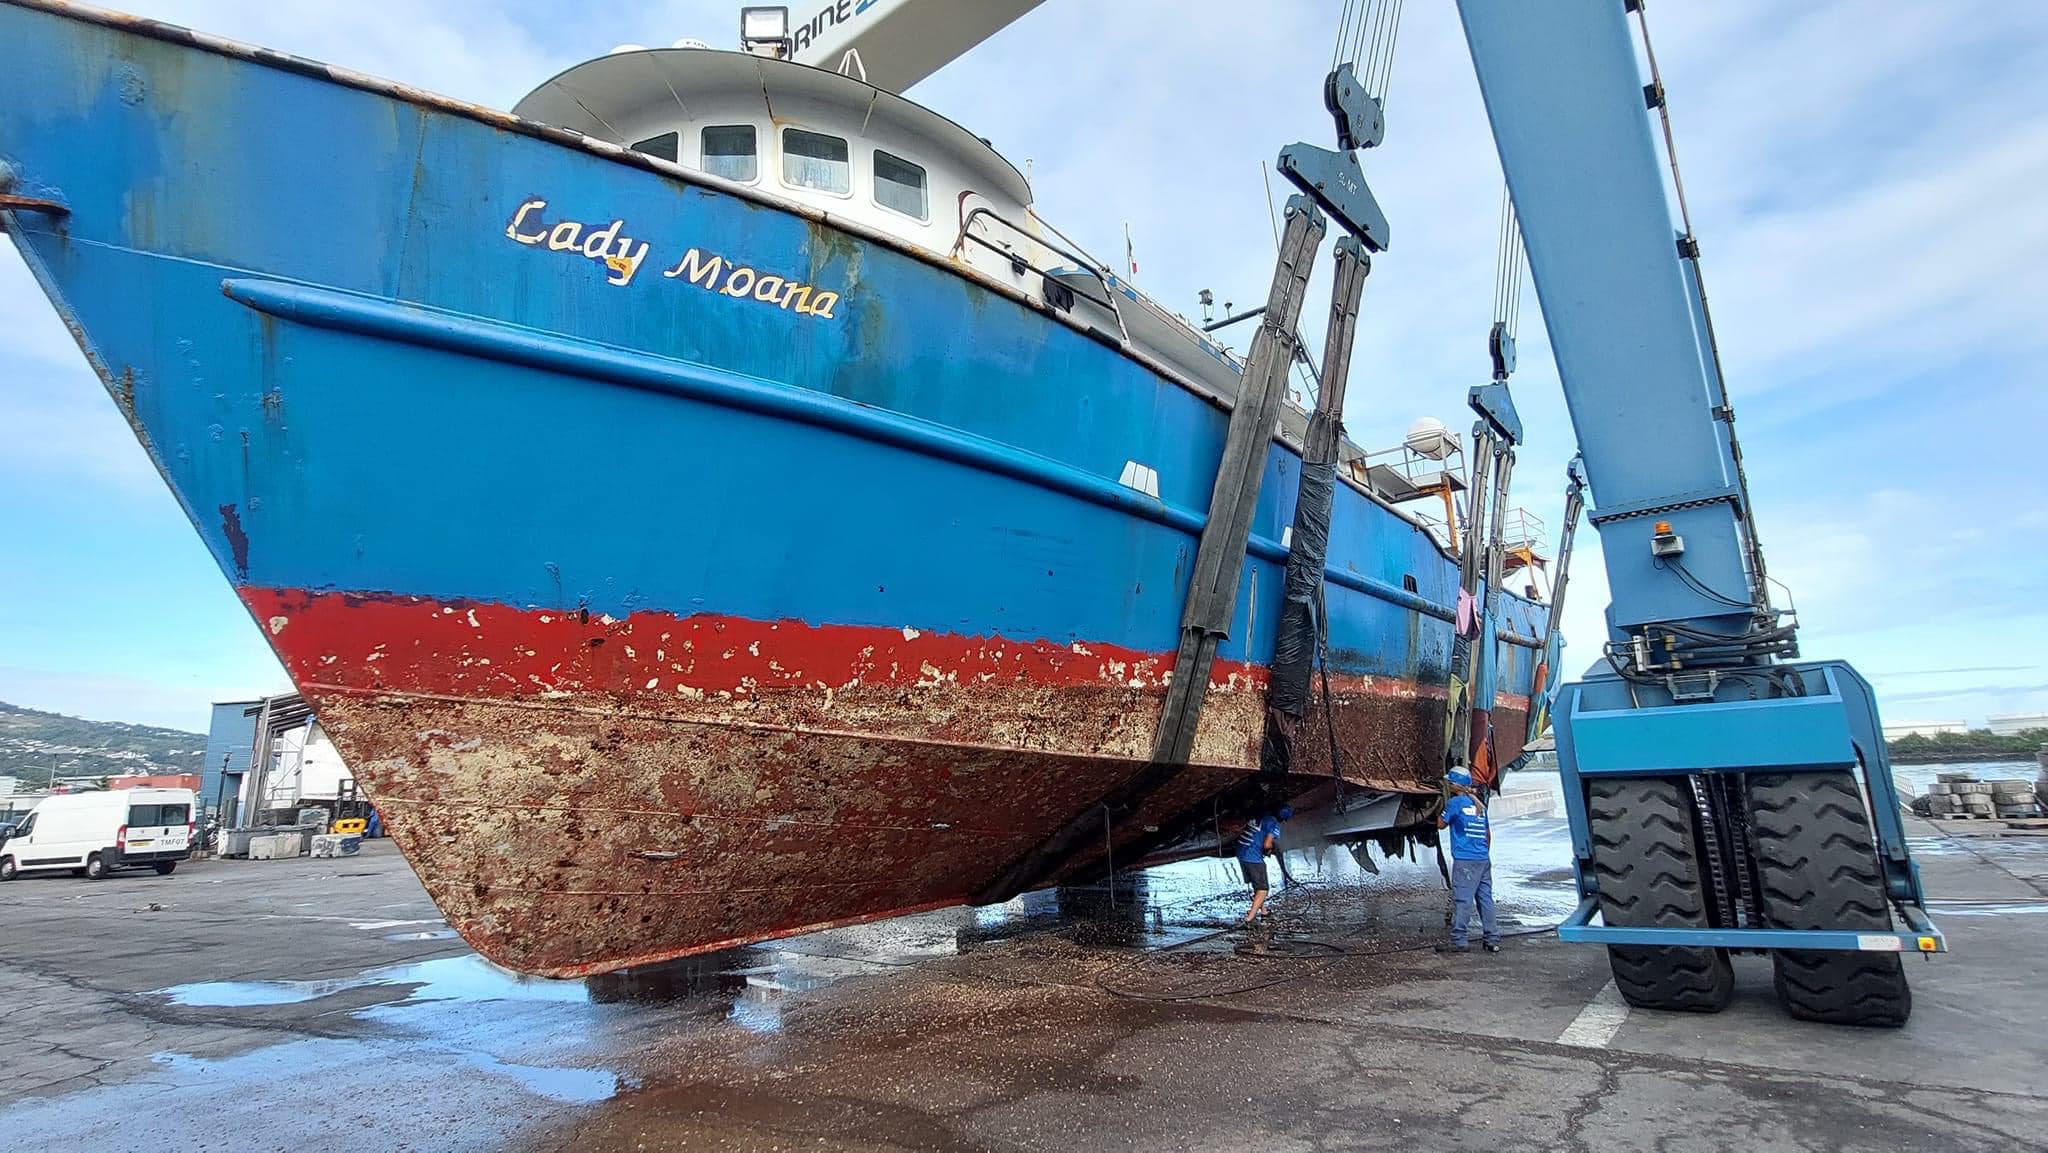 Lady Moana dry docked in Tahiti